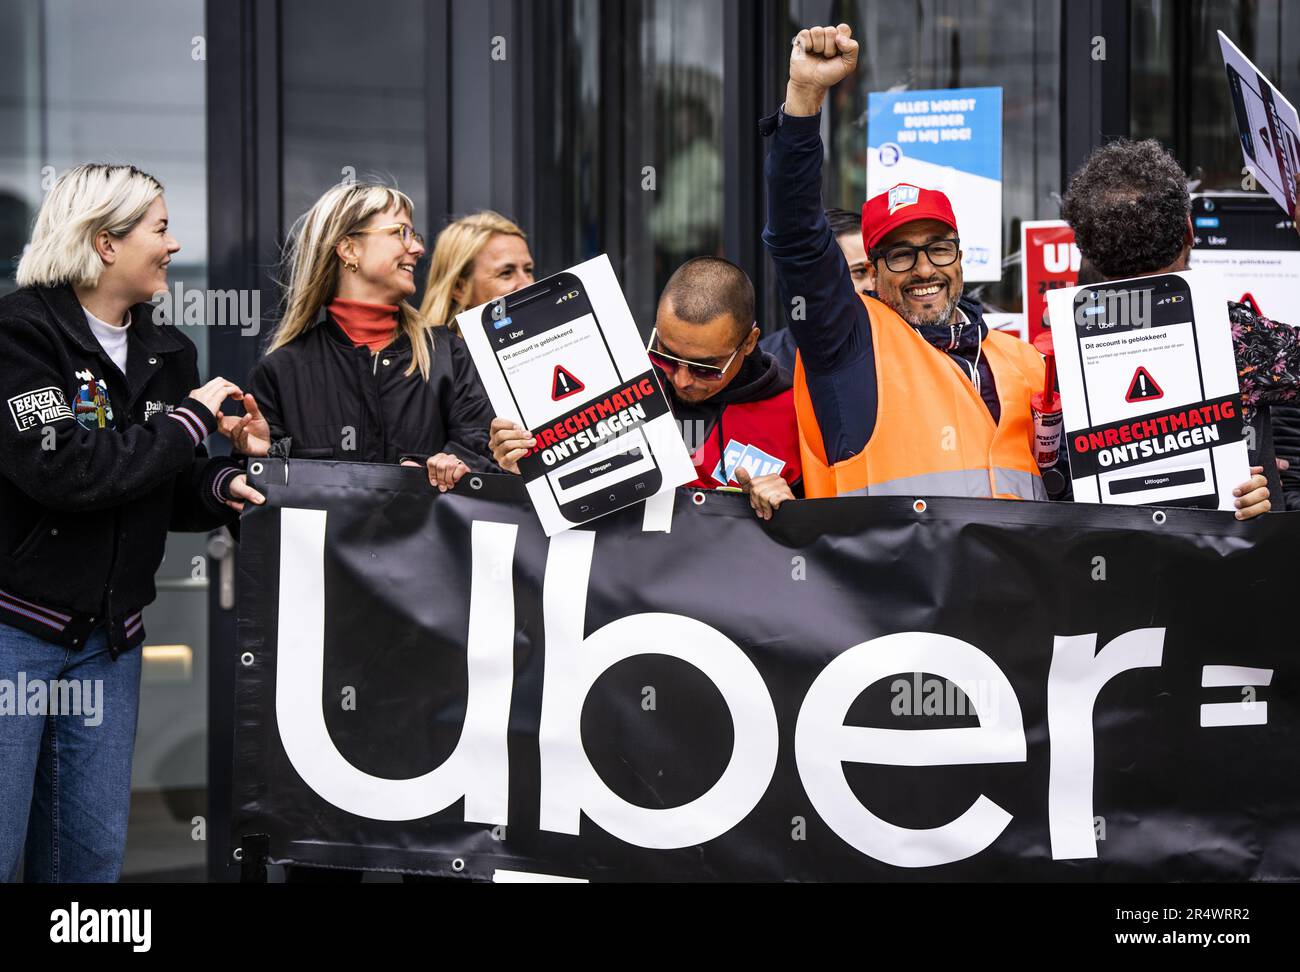 AMSTERDAM - les conducteurs qui conduisent pour l'application de taxi Uber font campagne contre le faux emploi de soi. Les actions ont lieu à Bruxelles, Genève, Londres et Paris, avec lesquelles les conducteurs veulent faire respecter les lois gouvernementales. ANP FREEK VAN DEN BERGH pays-bas hors - belgique hors Banque D'Images